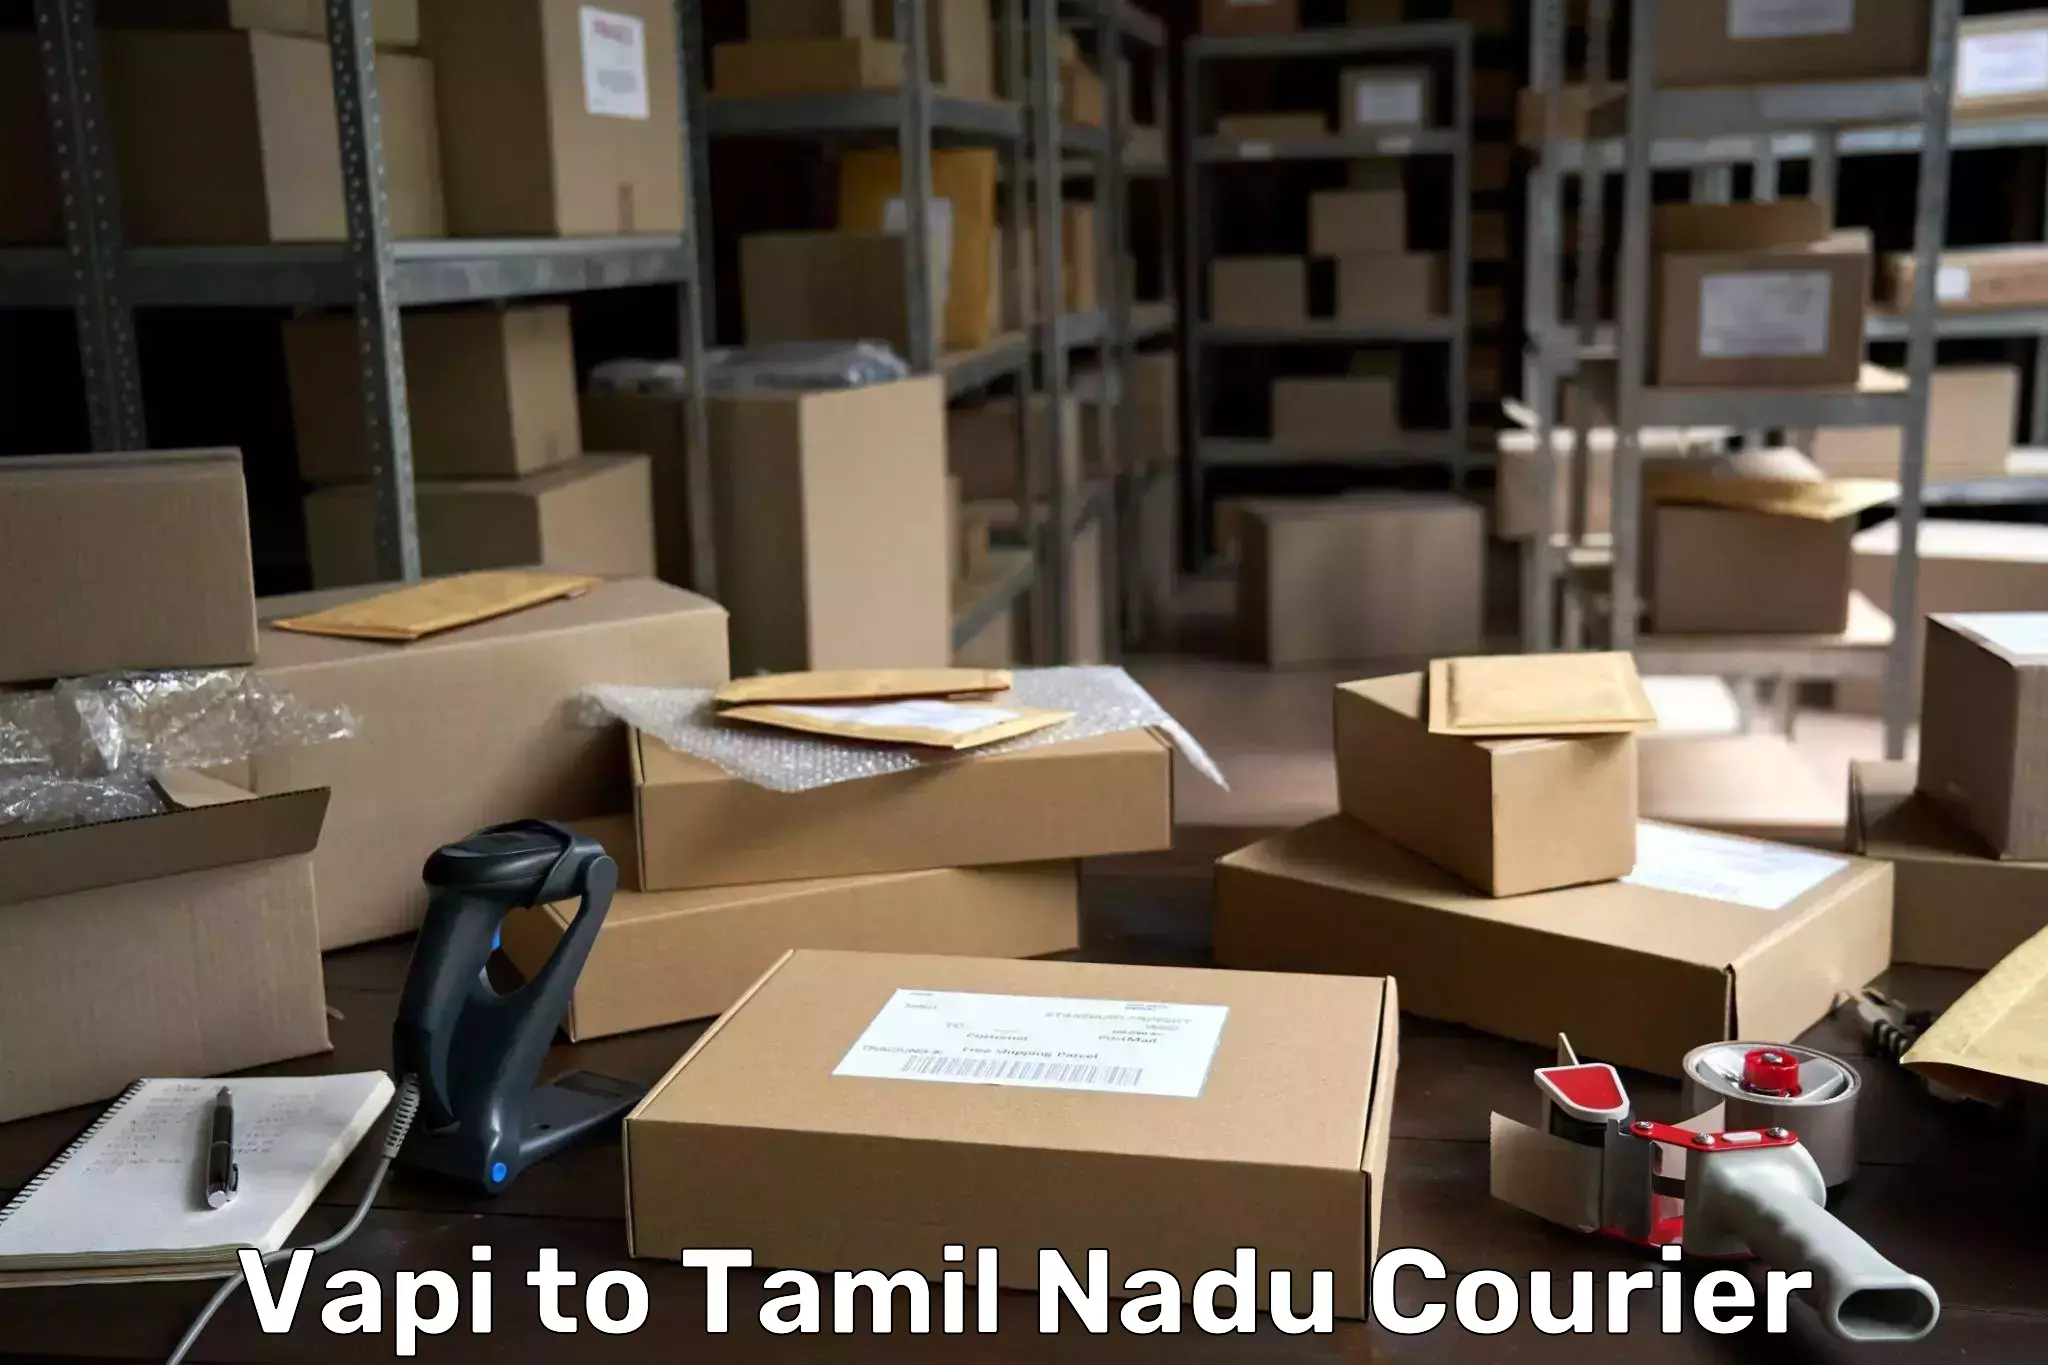 Reliable shipping partners Vapi to Tiruvarur